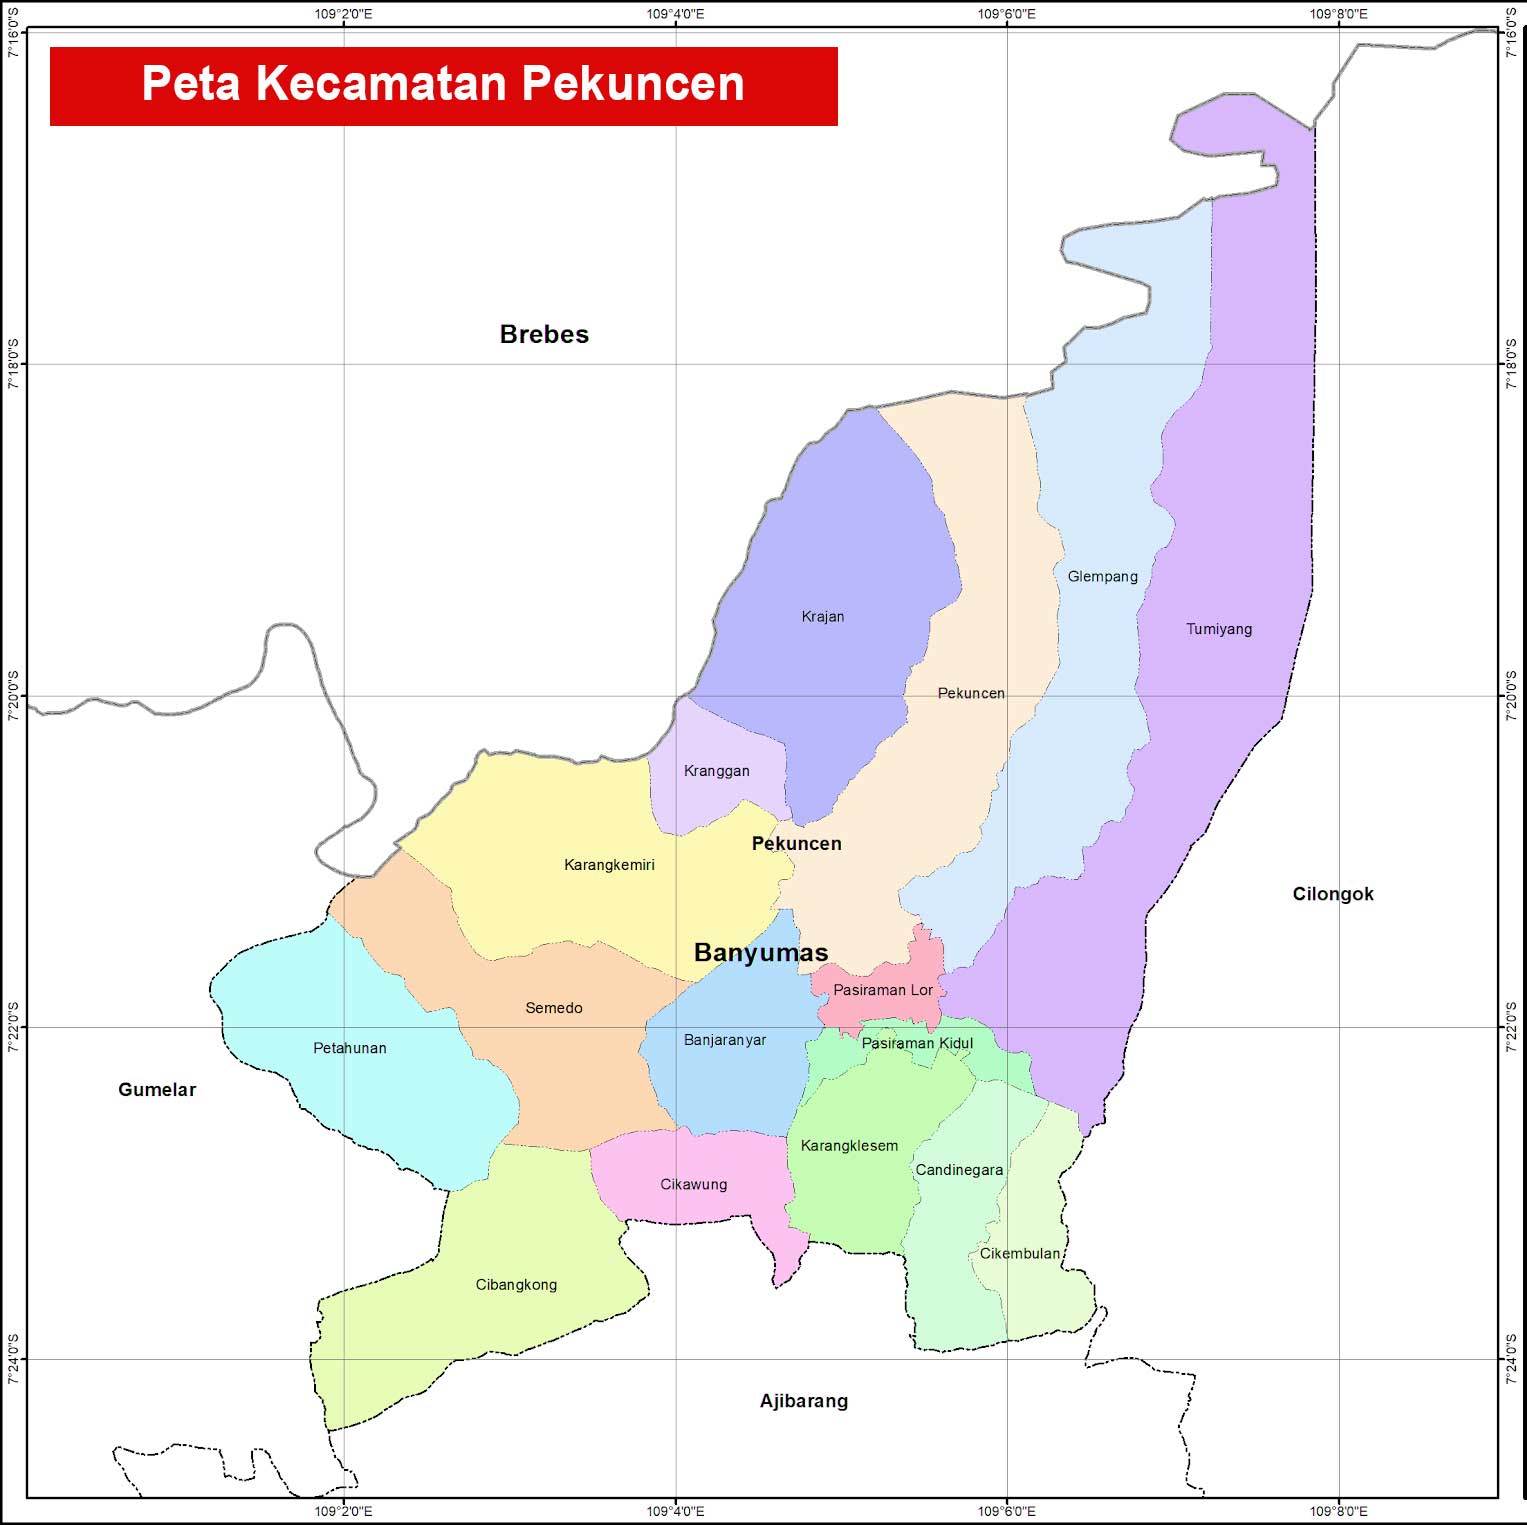 Peta Kecamatan Pekuncen